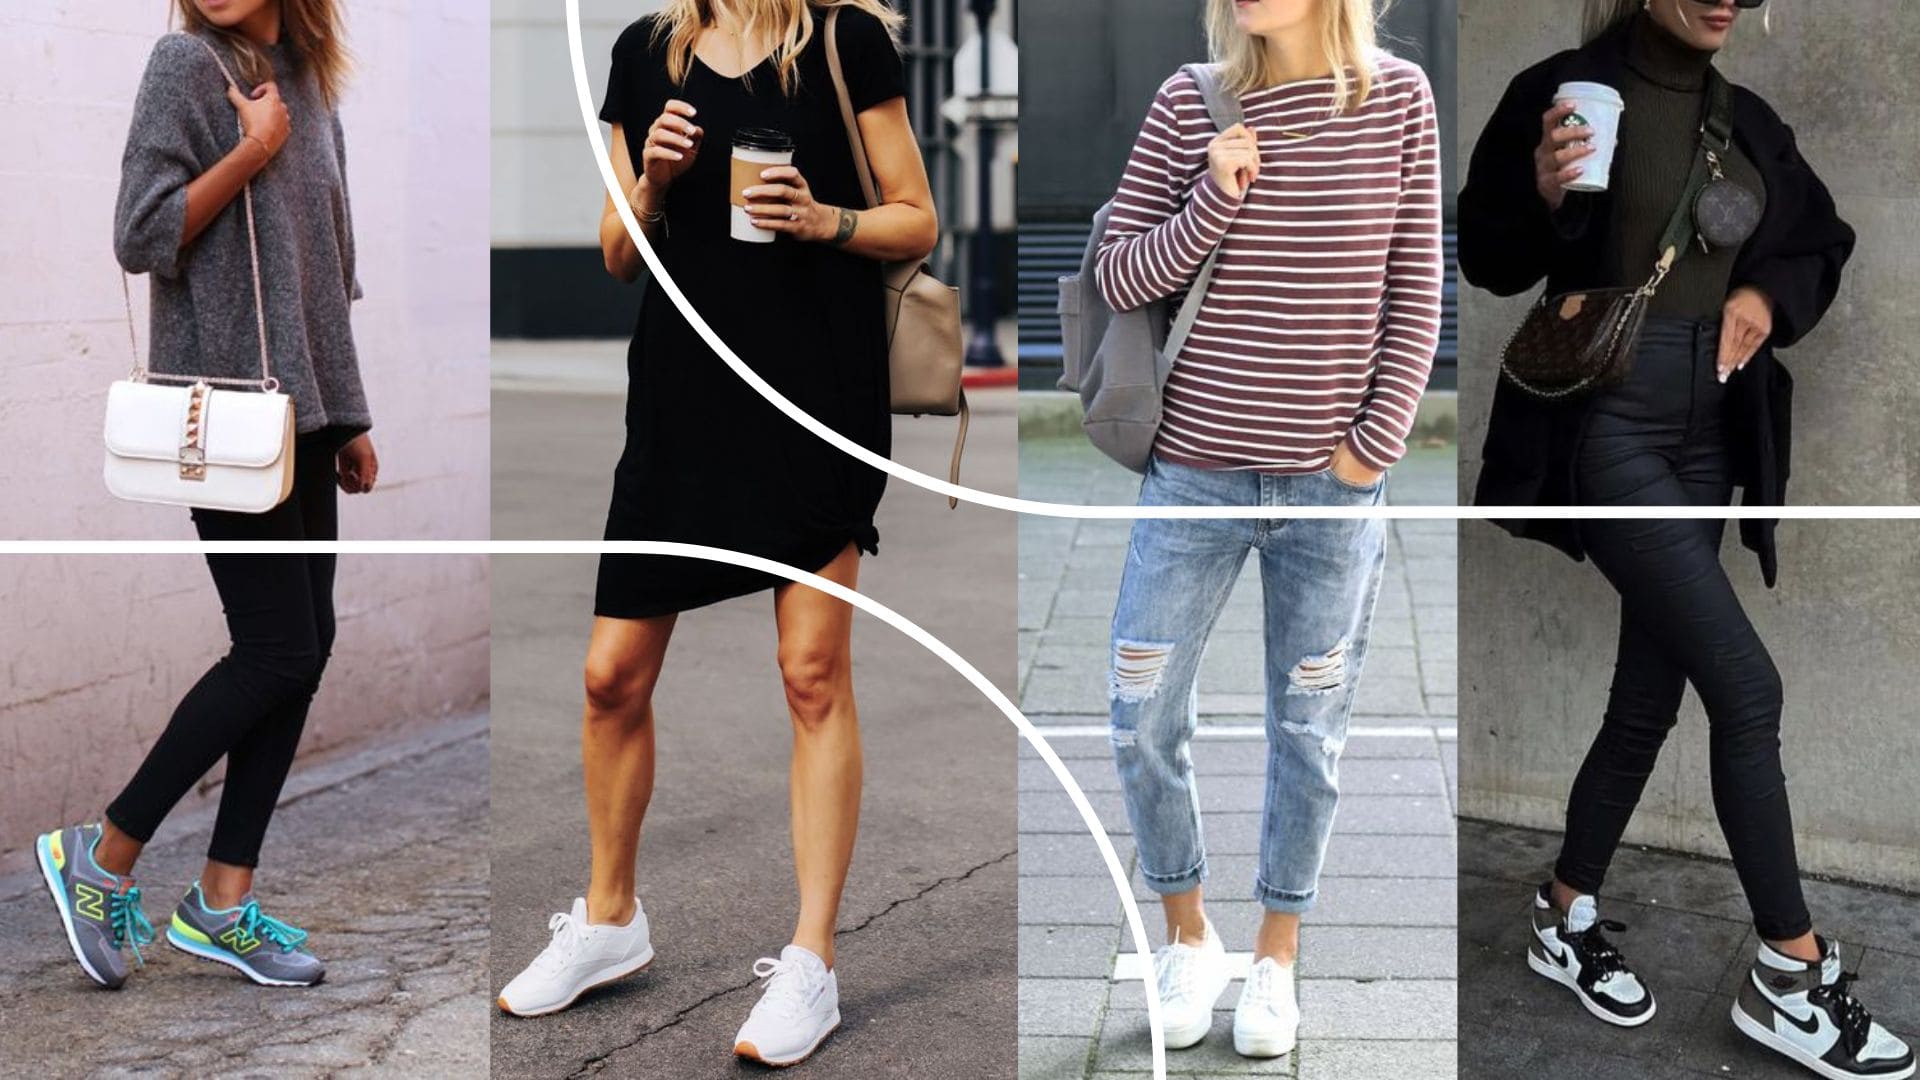 Quatro fotos diferentes de quatro mulheres diferentes usando diferentes tipos de tênis combinando com suas roupas.